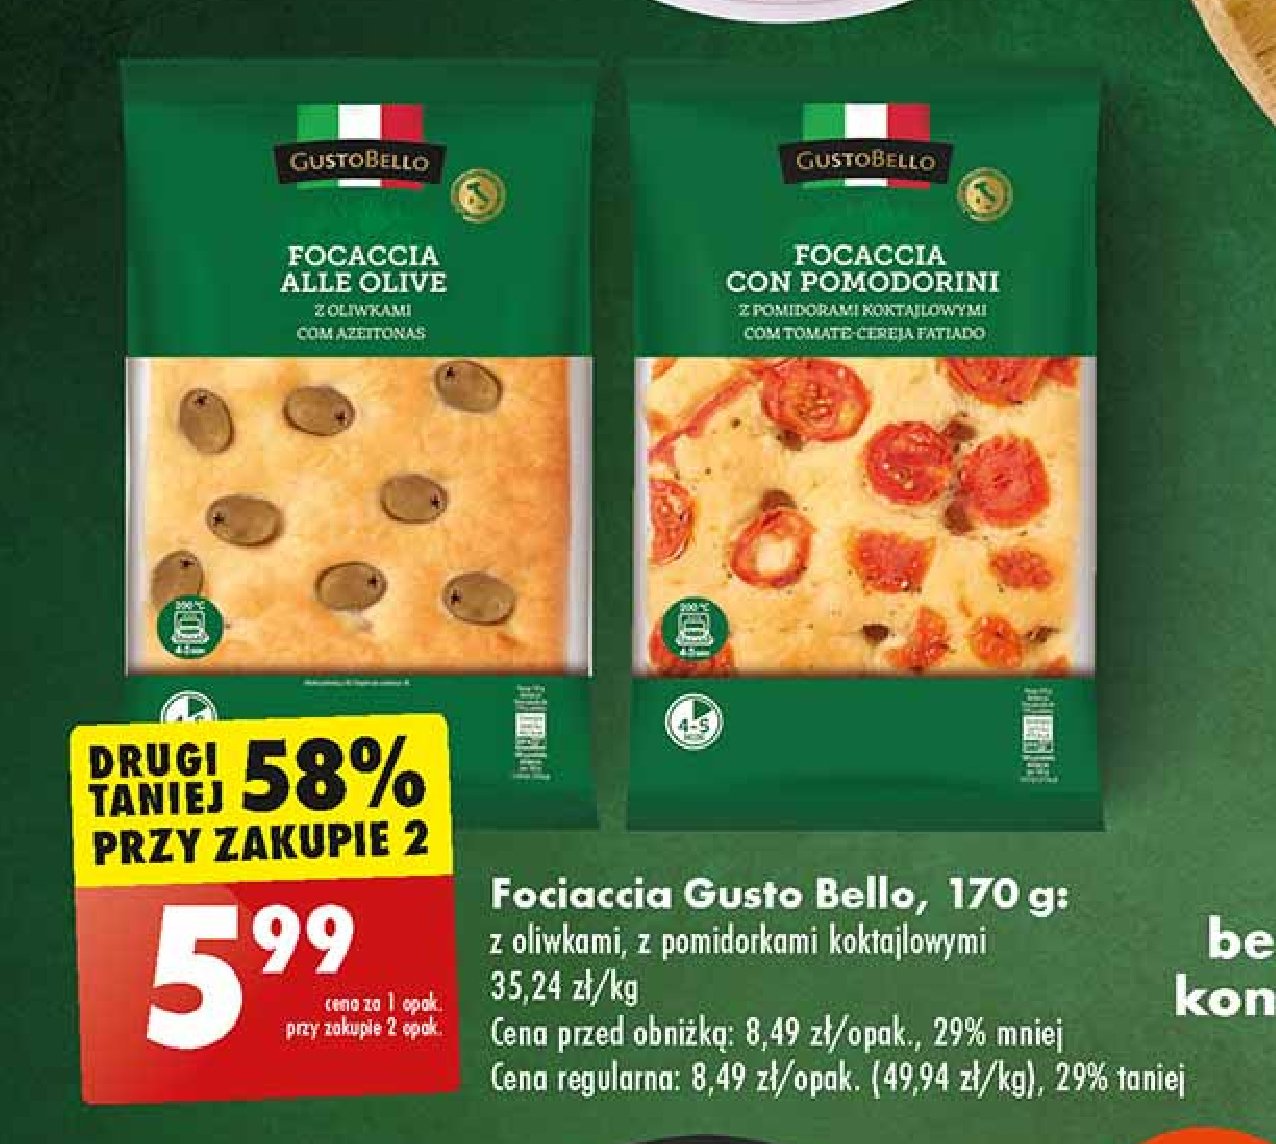 Focaccia z pomidorami Gustobello promocja